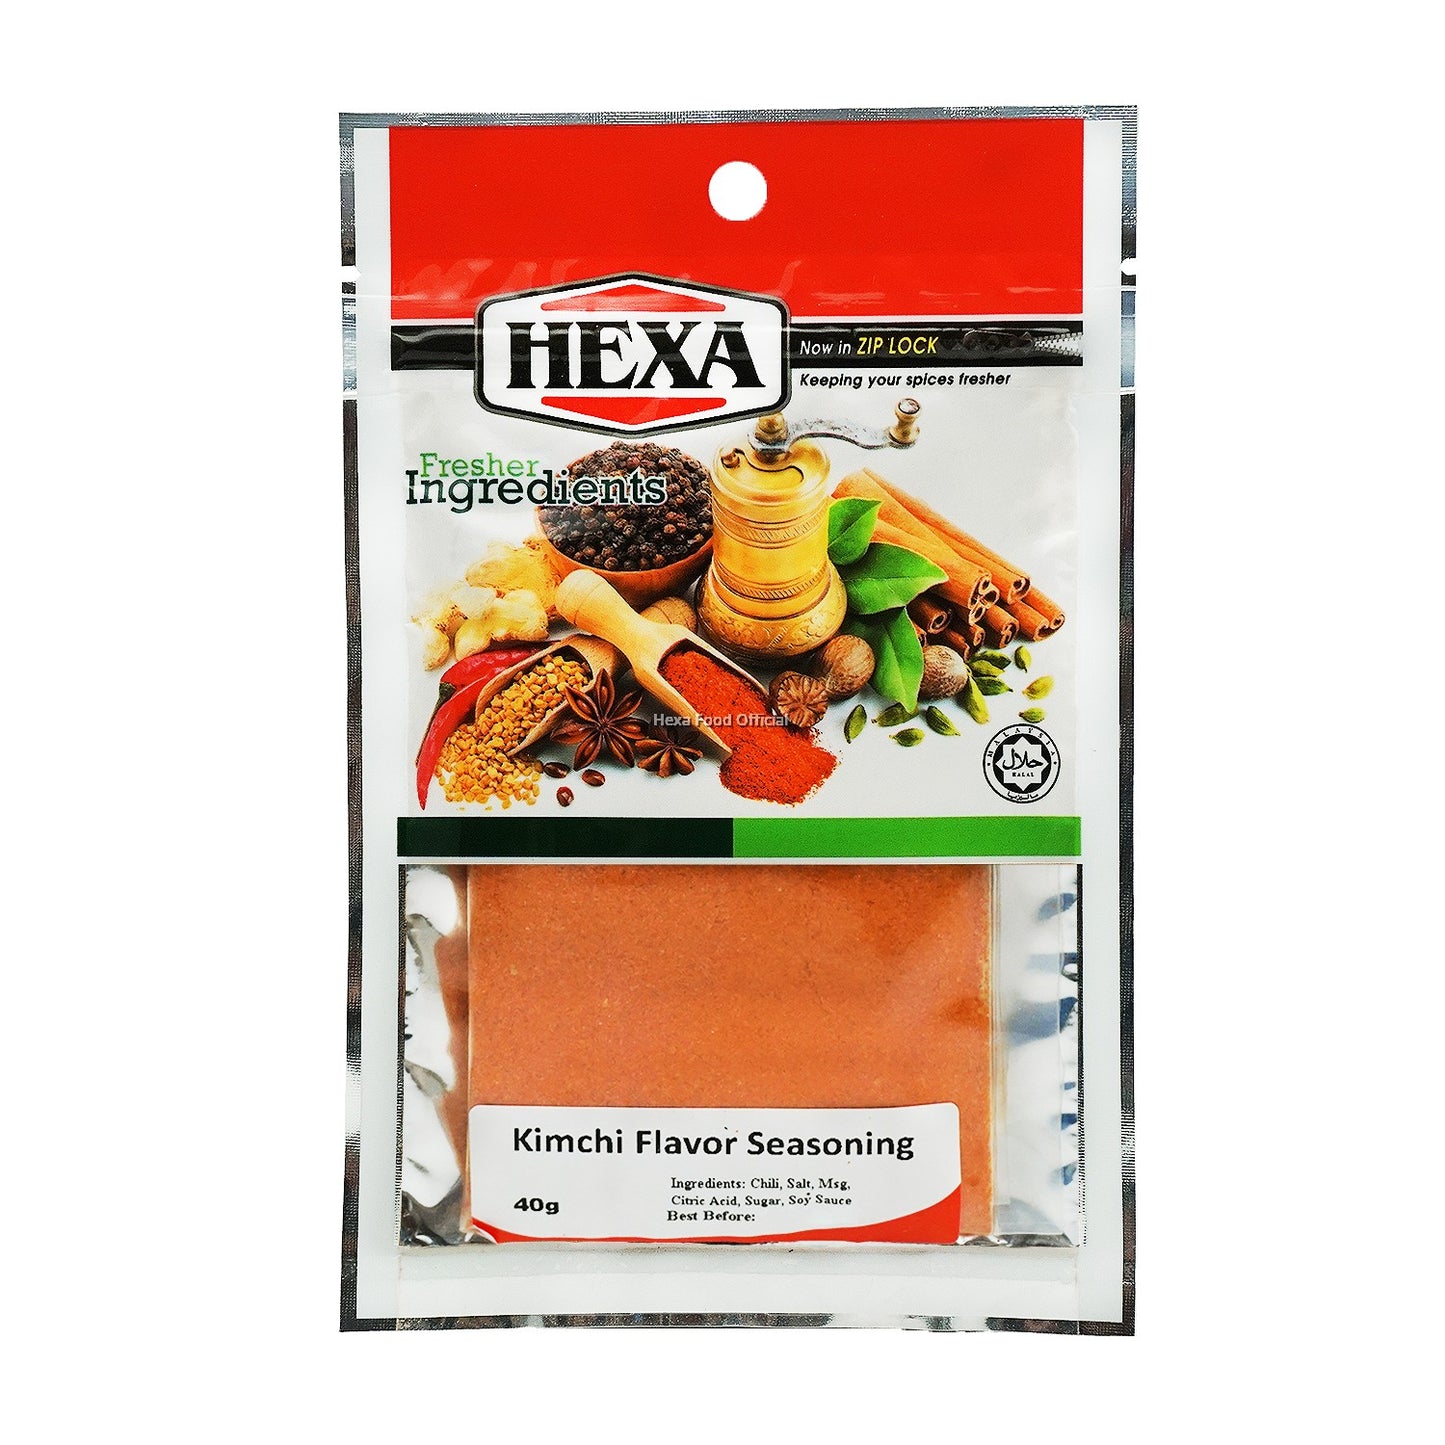 HEXA HALAL Kimchi Flavor Seasoning 40gm*3